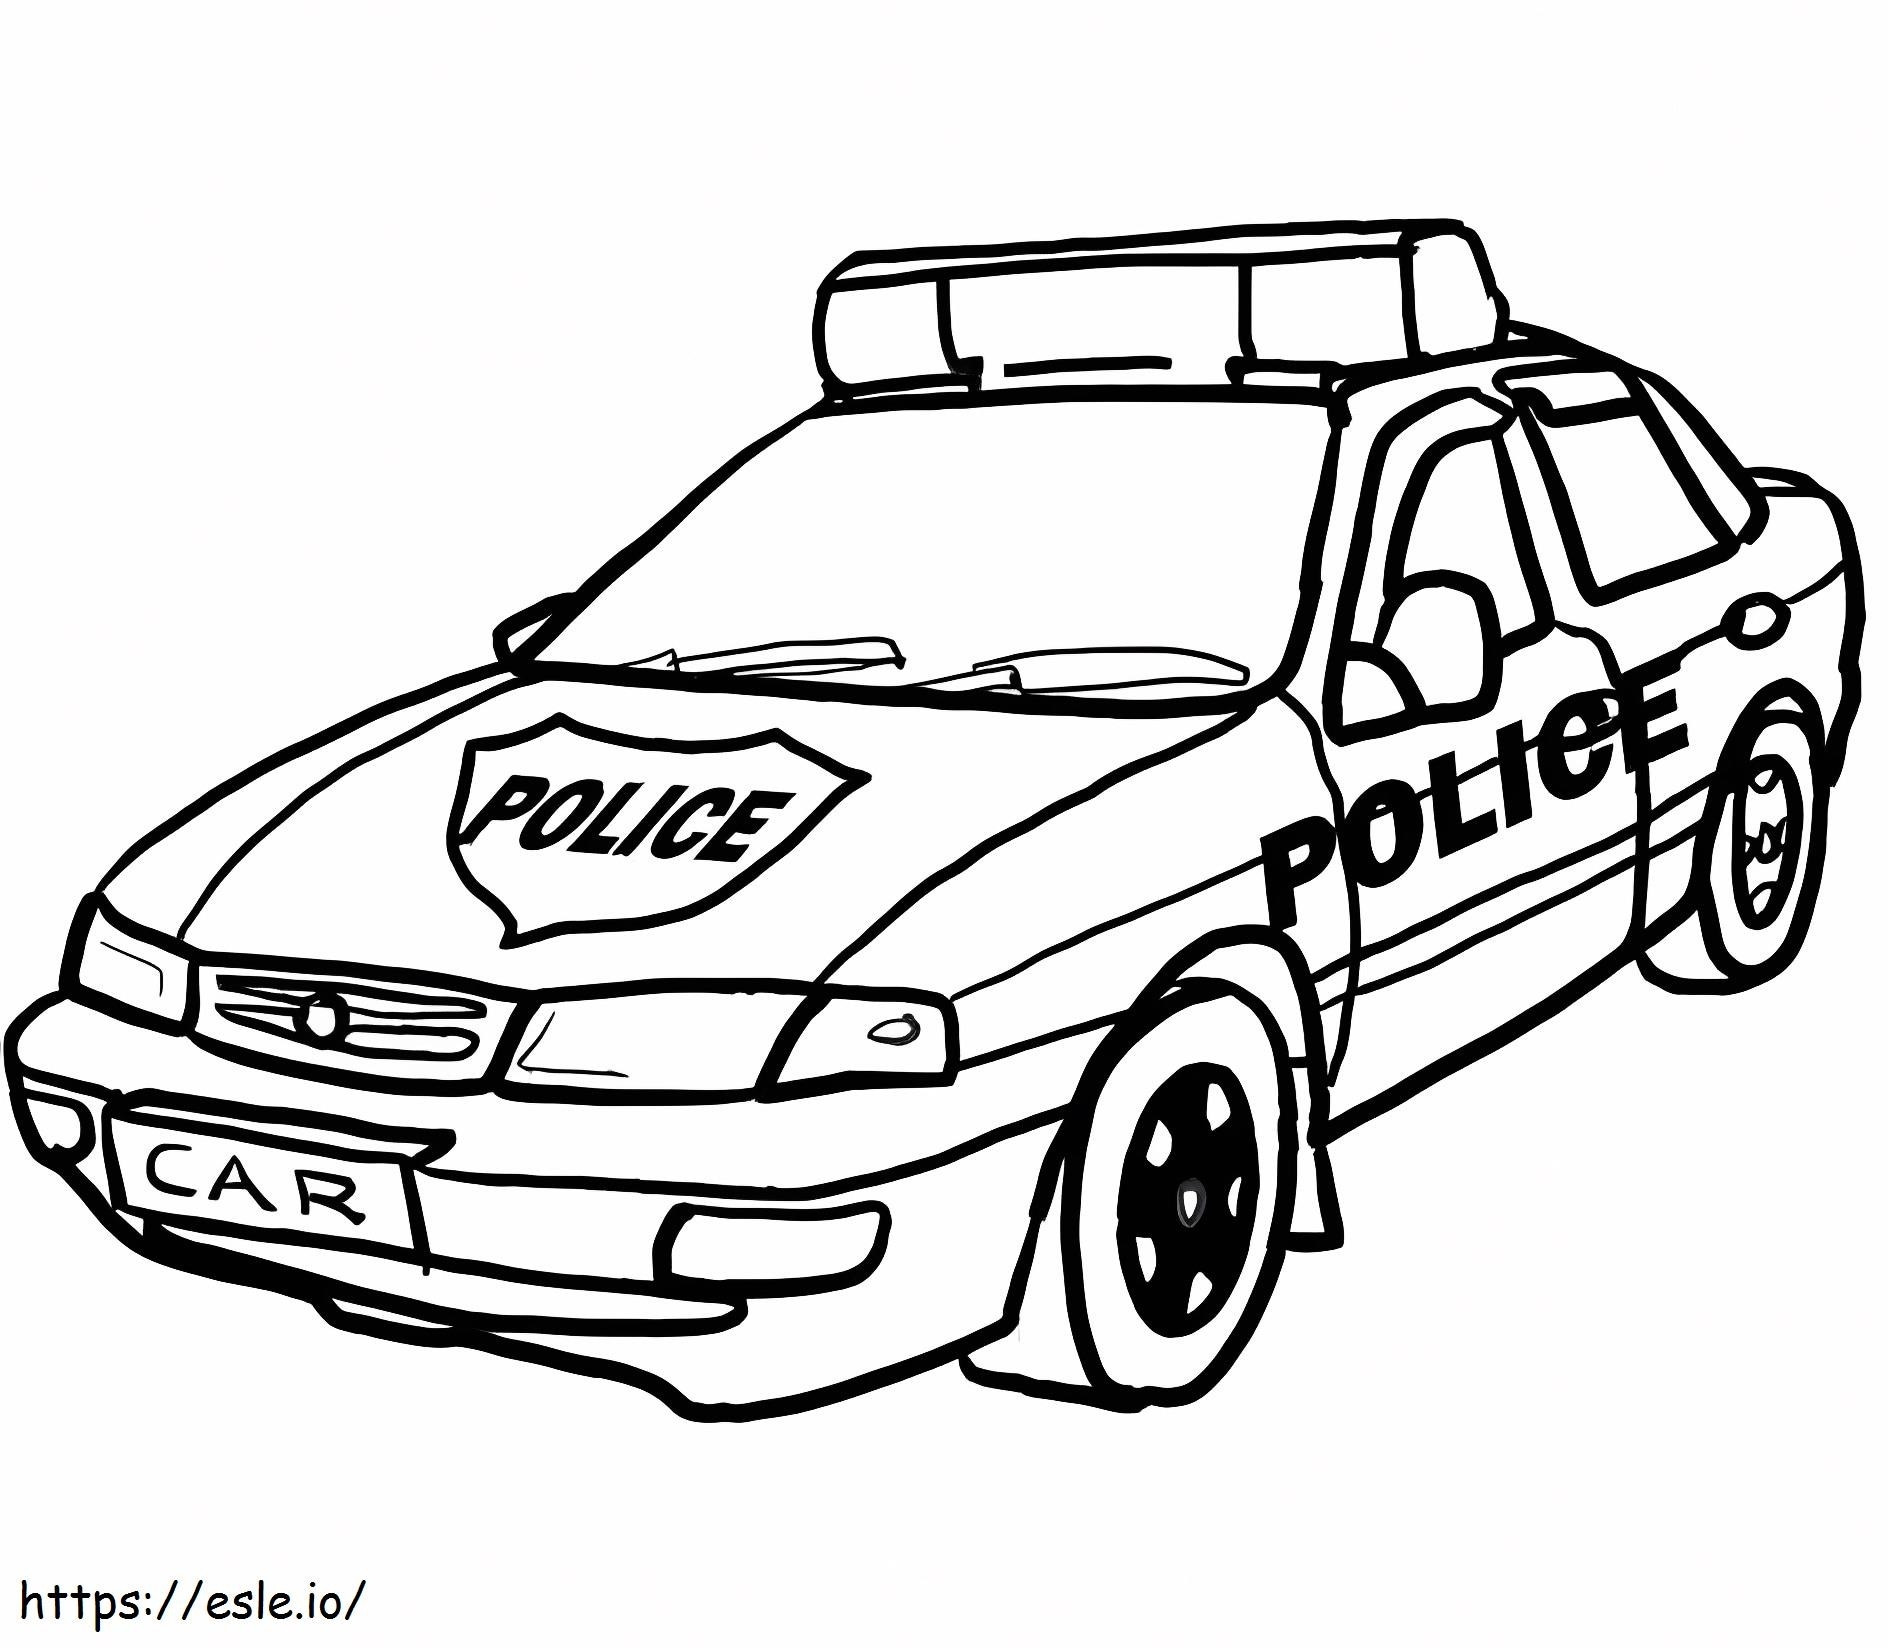 Auto della polizia da stampare da colorare